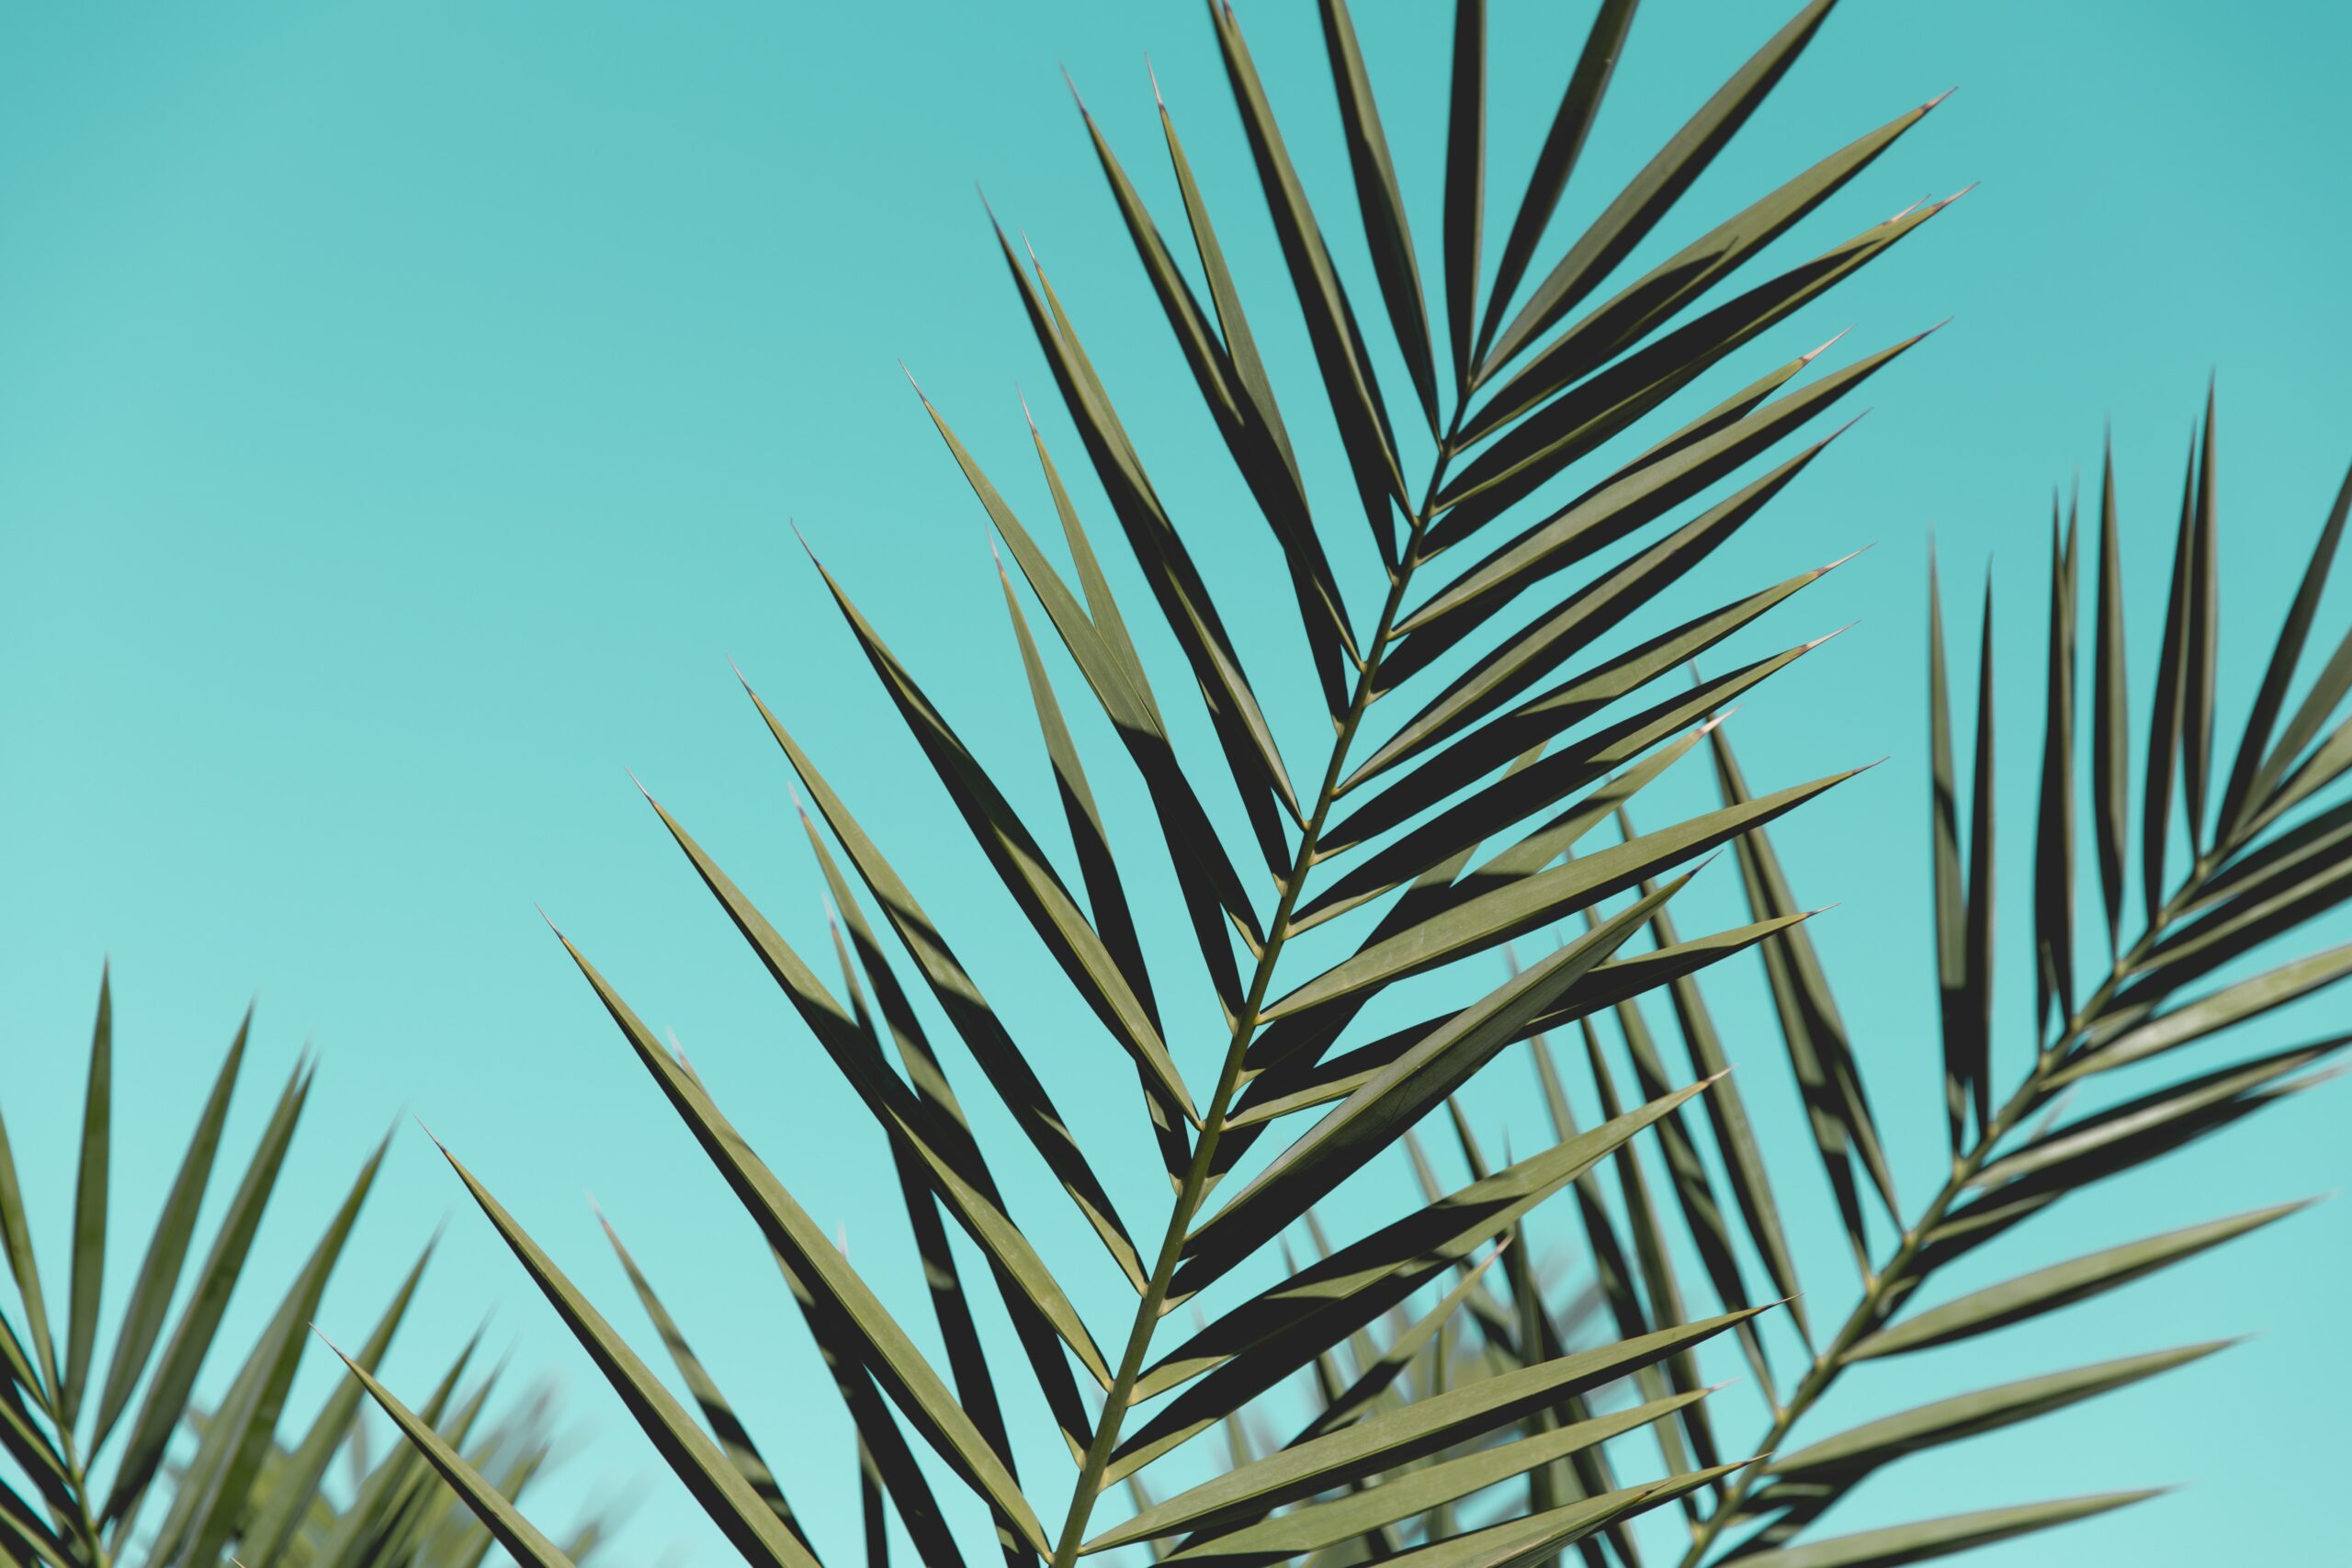 Palm kunstplant: De perfecte manier om groen en natuurlijkheid in je interieur te brengen